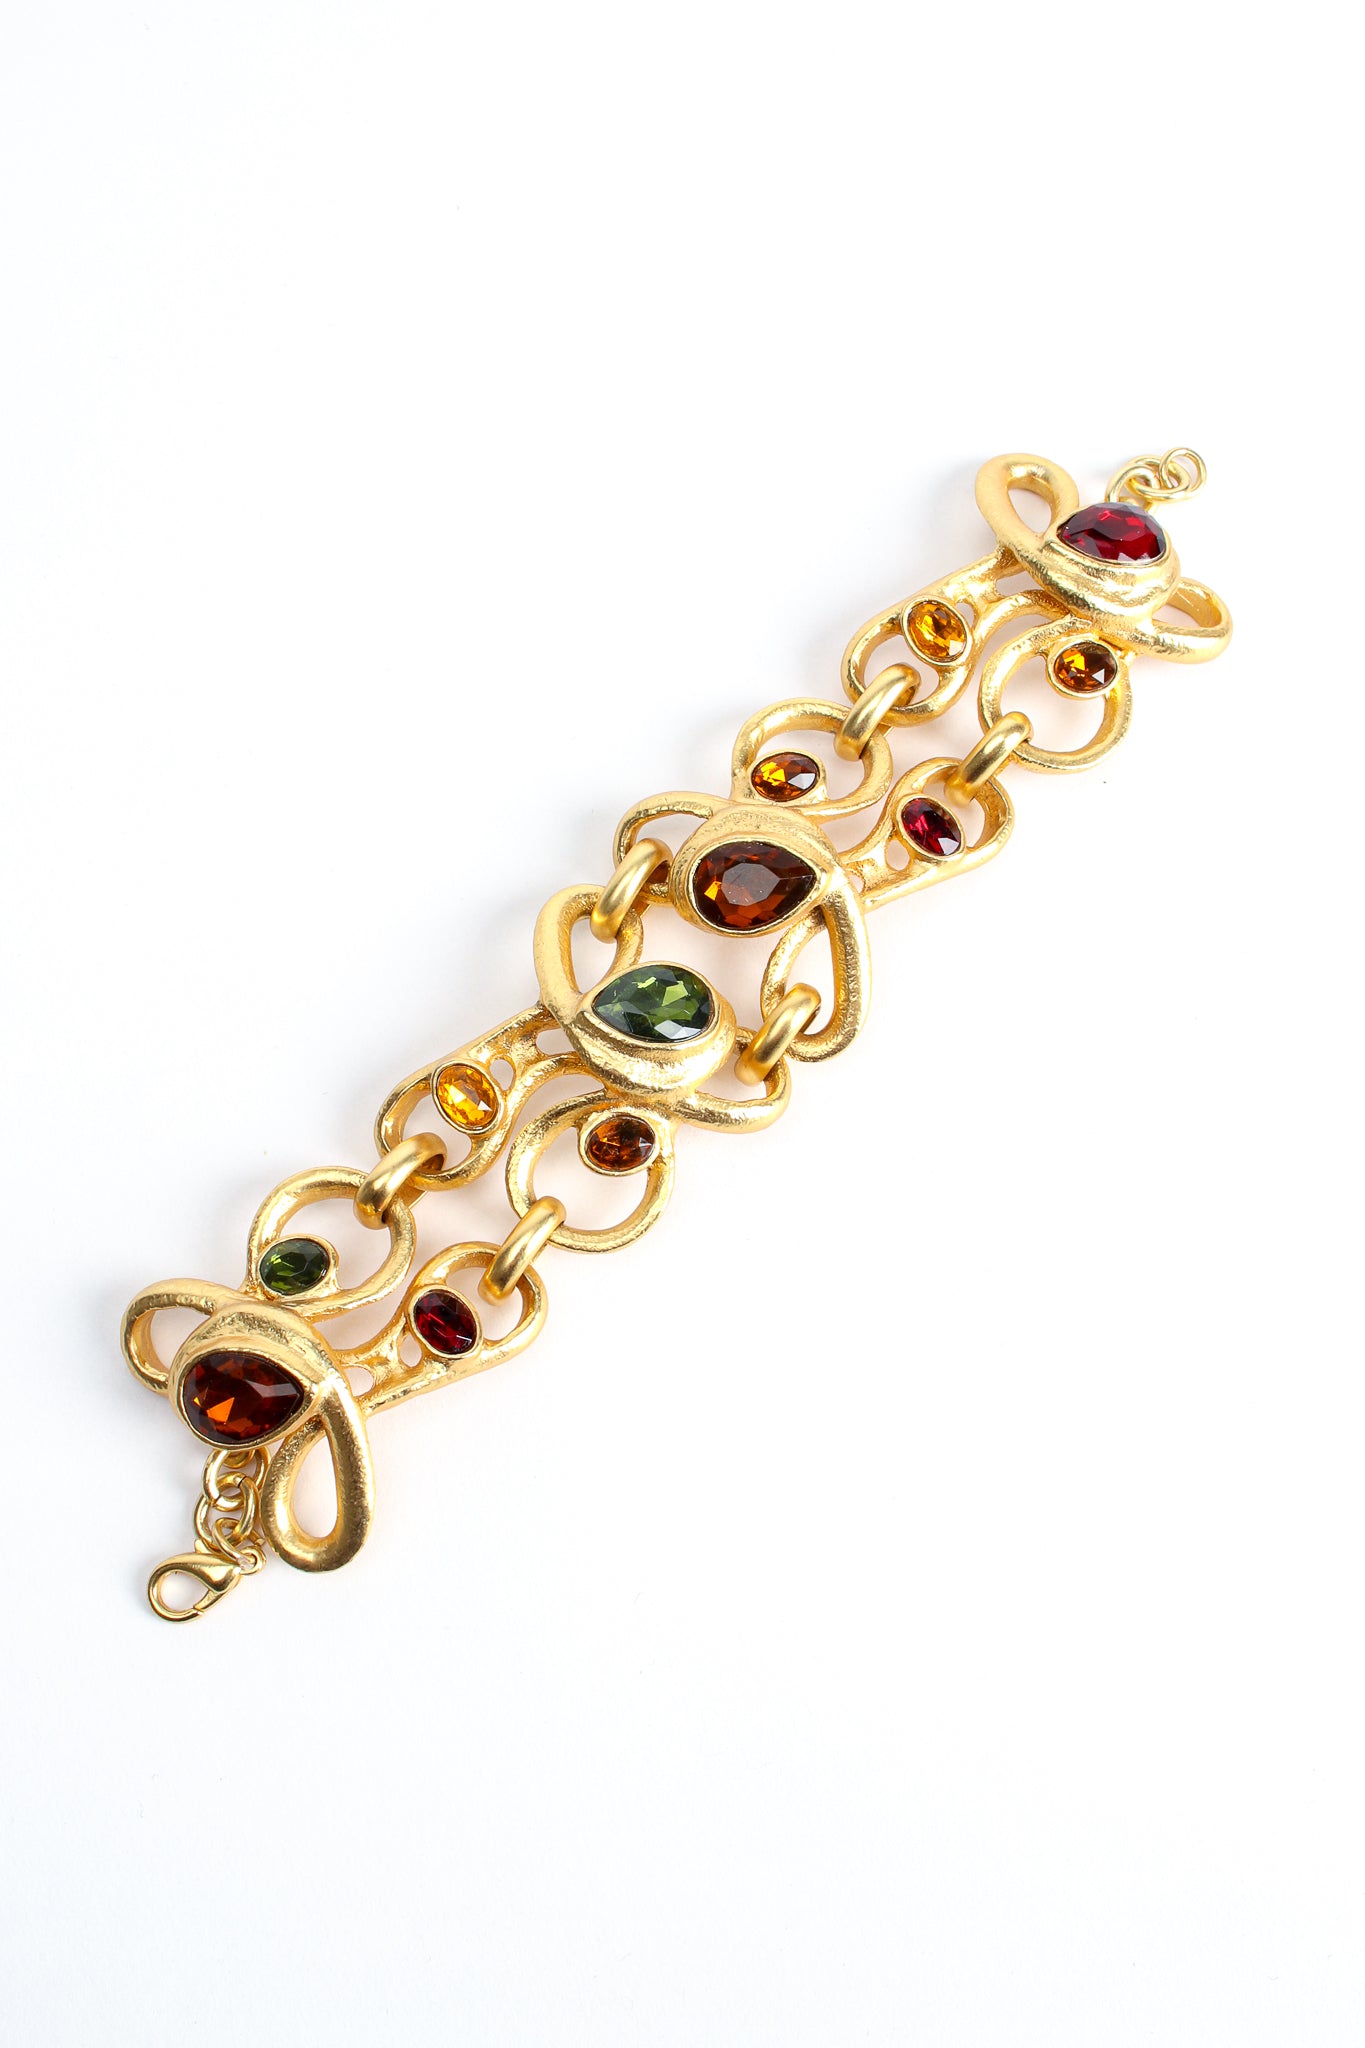 Vintage Modernist Jeweled Bracelet at Recess Los Angeles